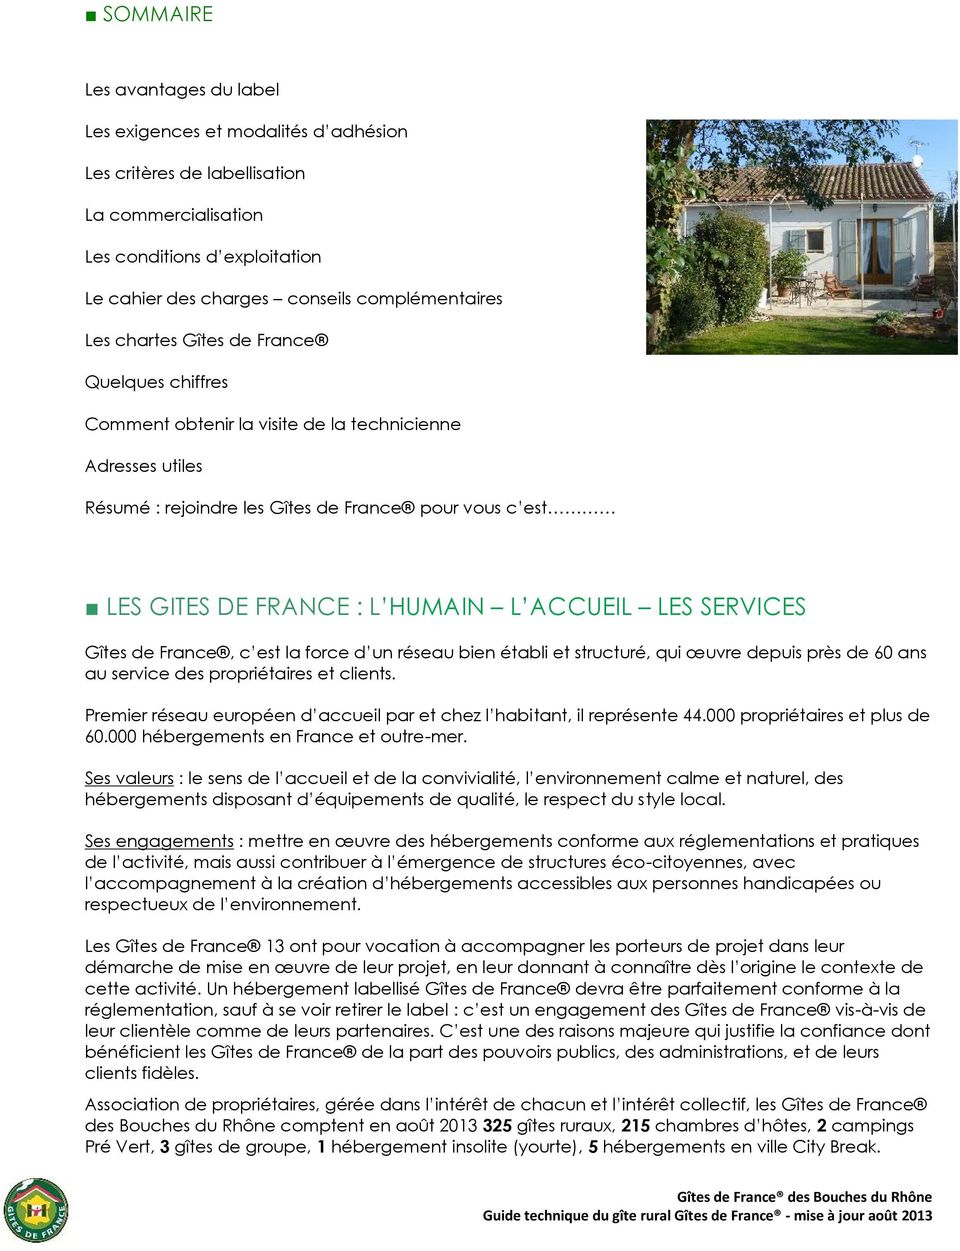 ACCUEIL LES SERVICES Gîtes de France, c est la force d un réseau bien établi et structuré, qui œuvre depuis près de 60 ans au service des propriétaires et clients.